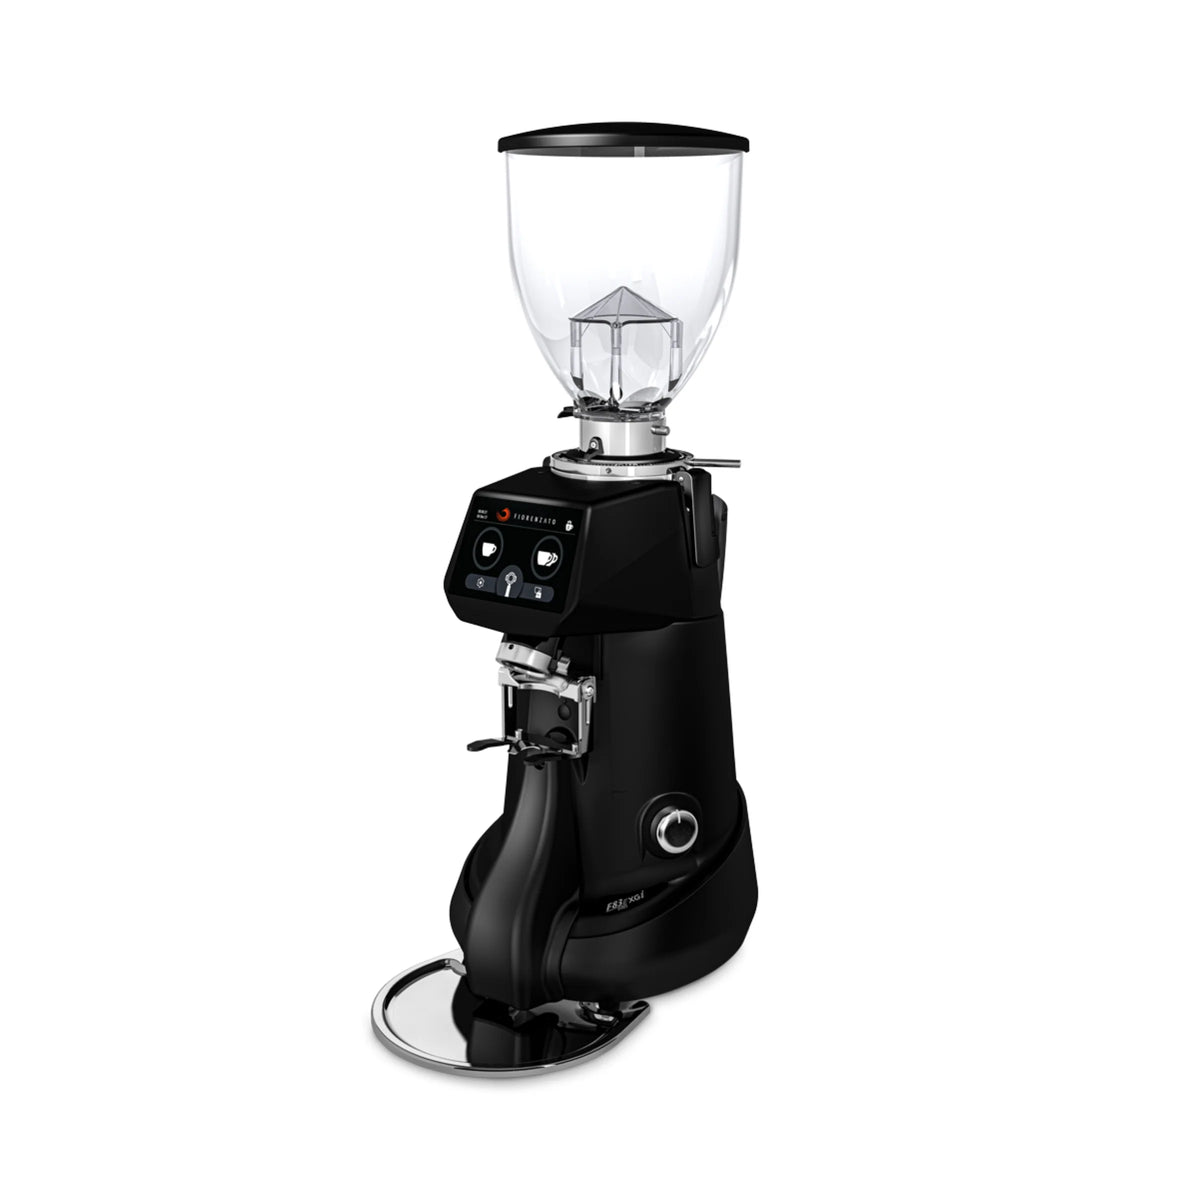 Fiorenzato F83 E XGI Pro 按重量研磨濃縮咖啡研磨機